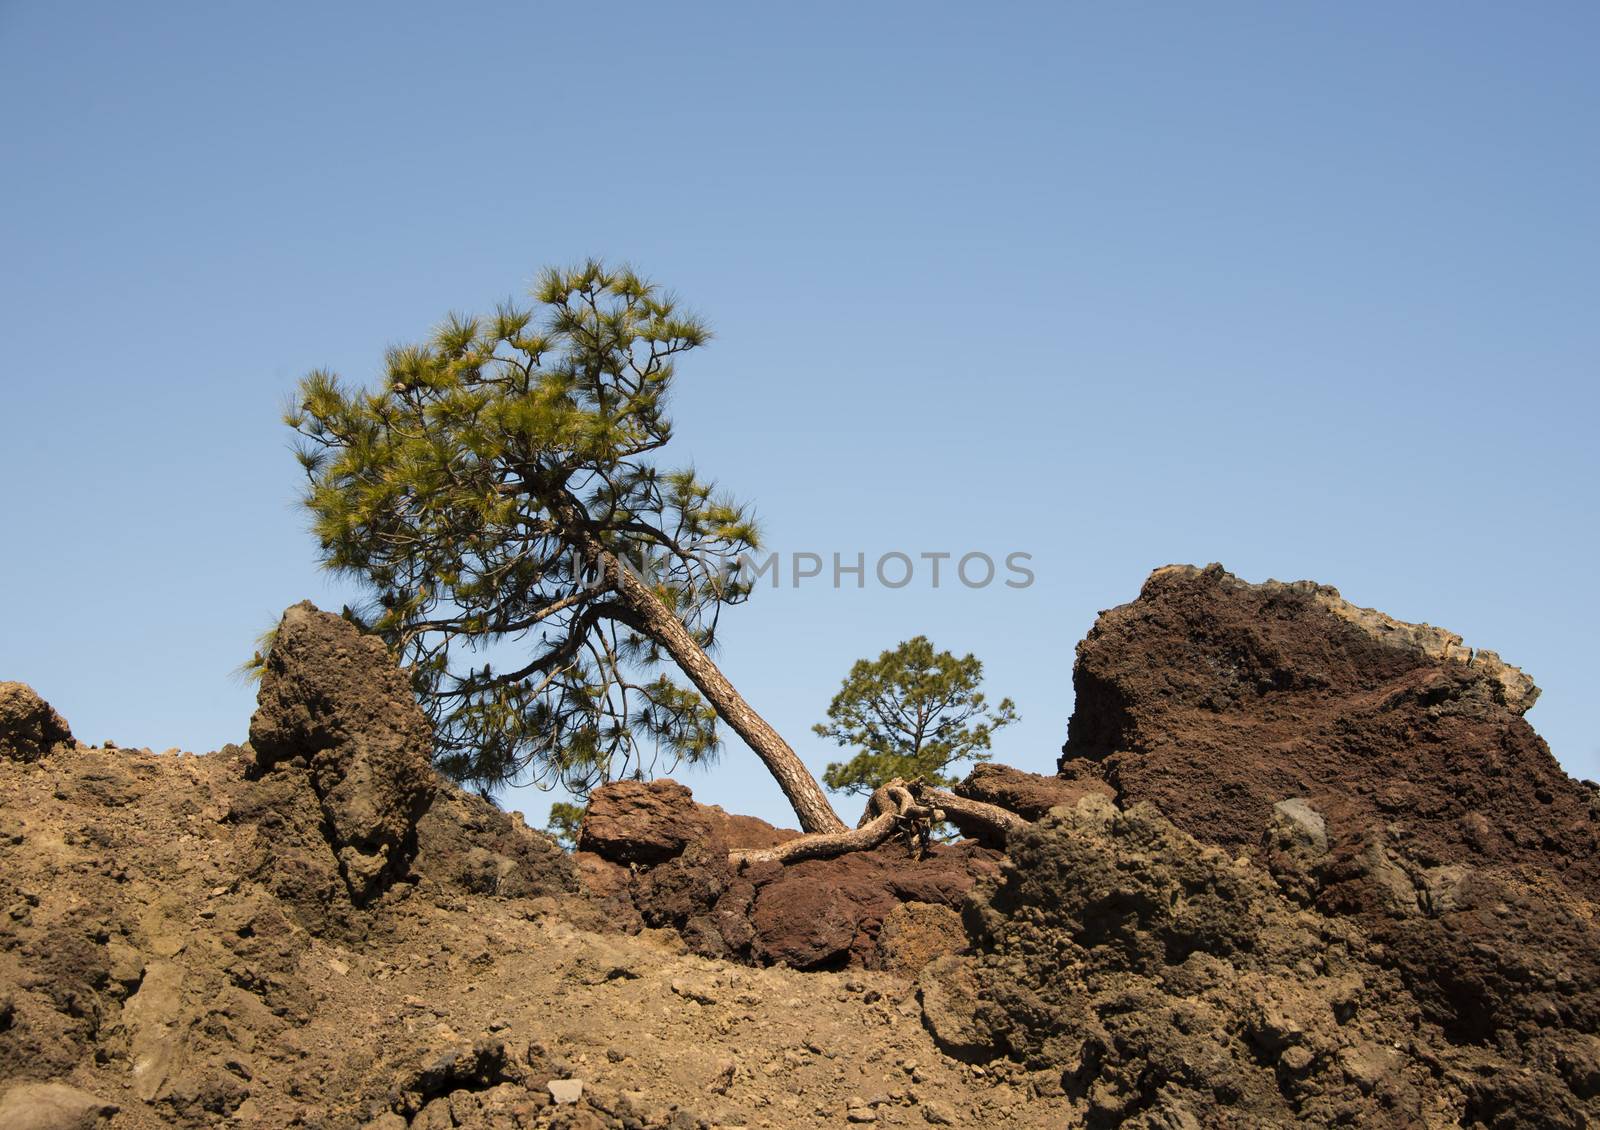 A pine tree striving for survival in barren volcanic soil